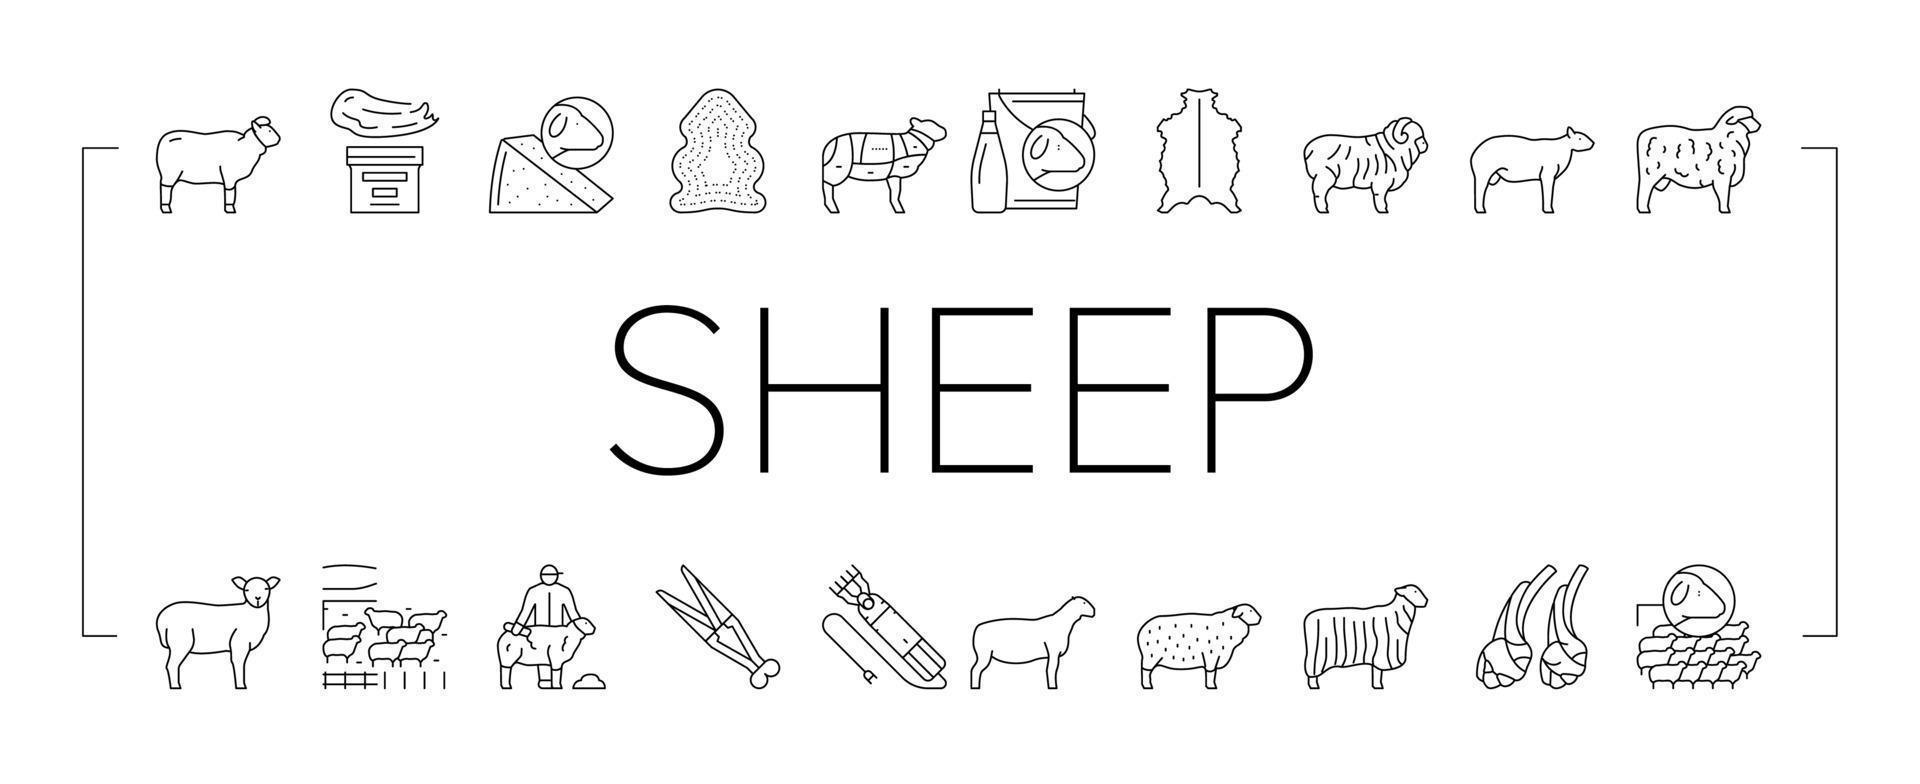 conjunto de iconos de negocios de granja de cría de ovejas vector